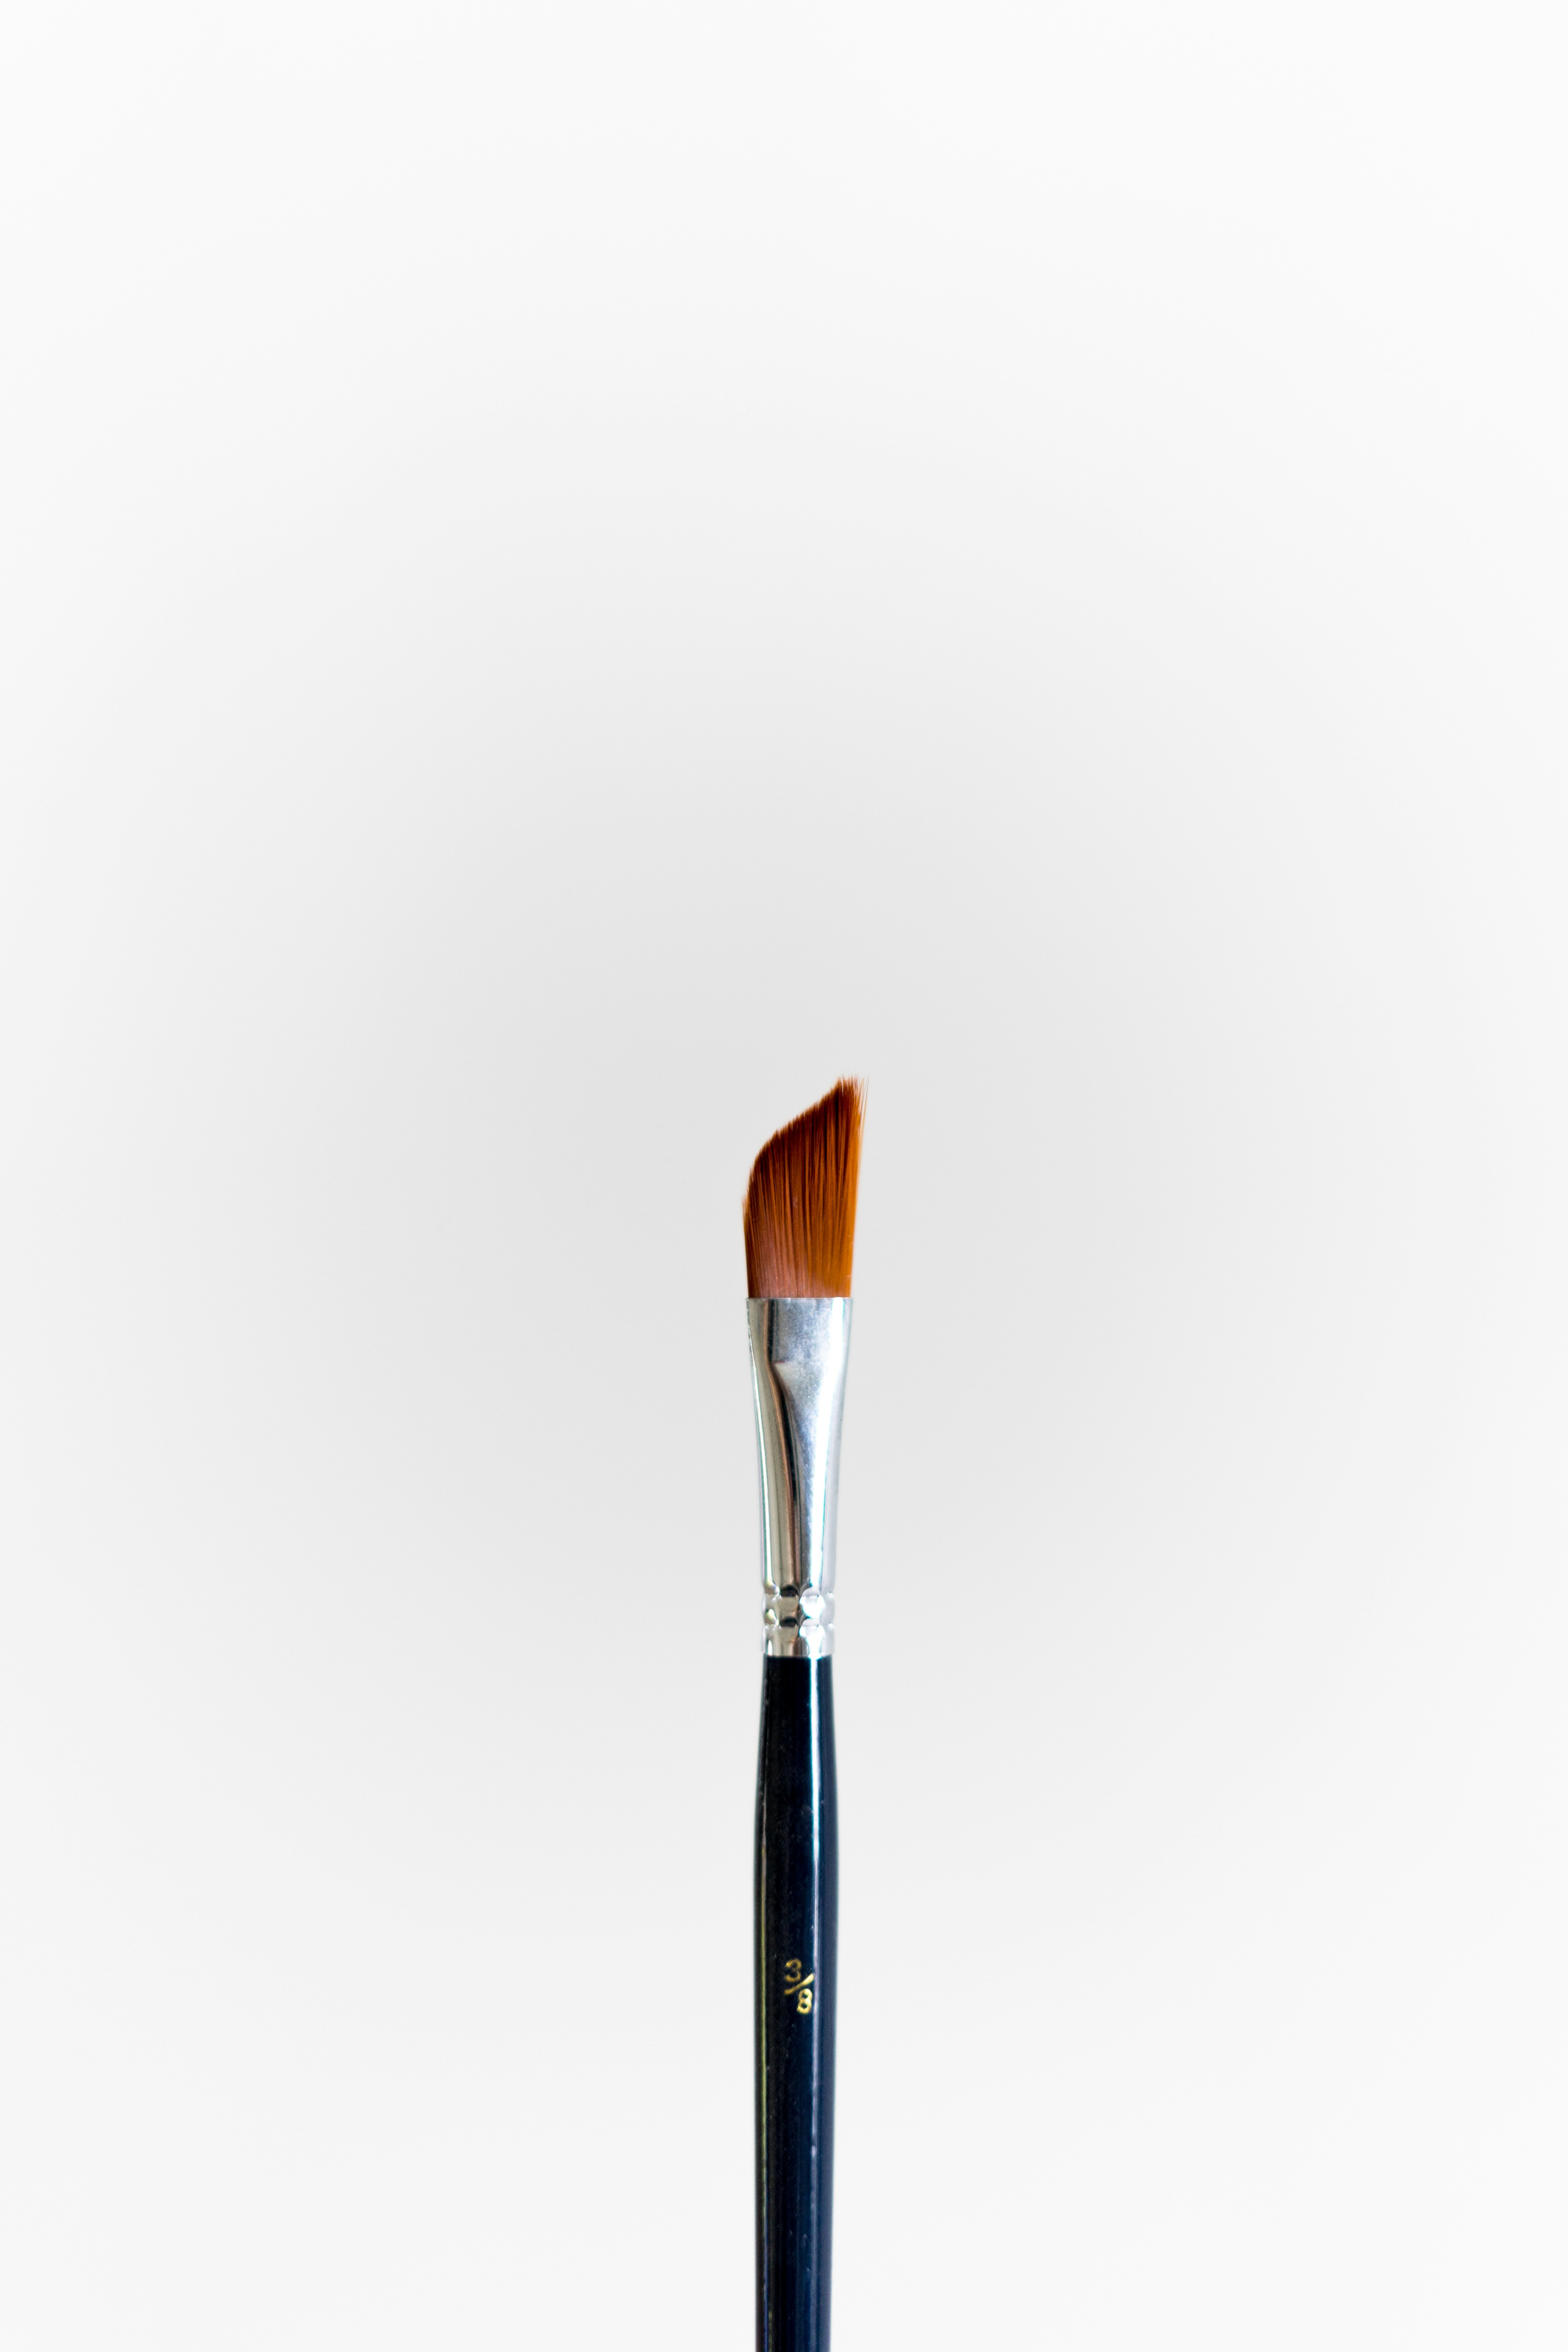 black and brown makeup brush